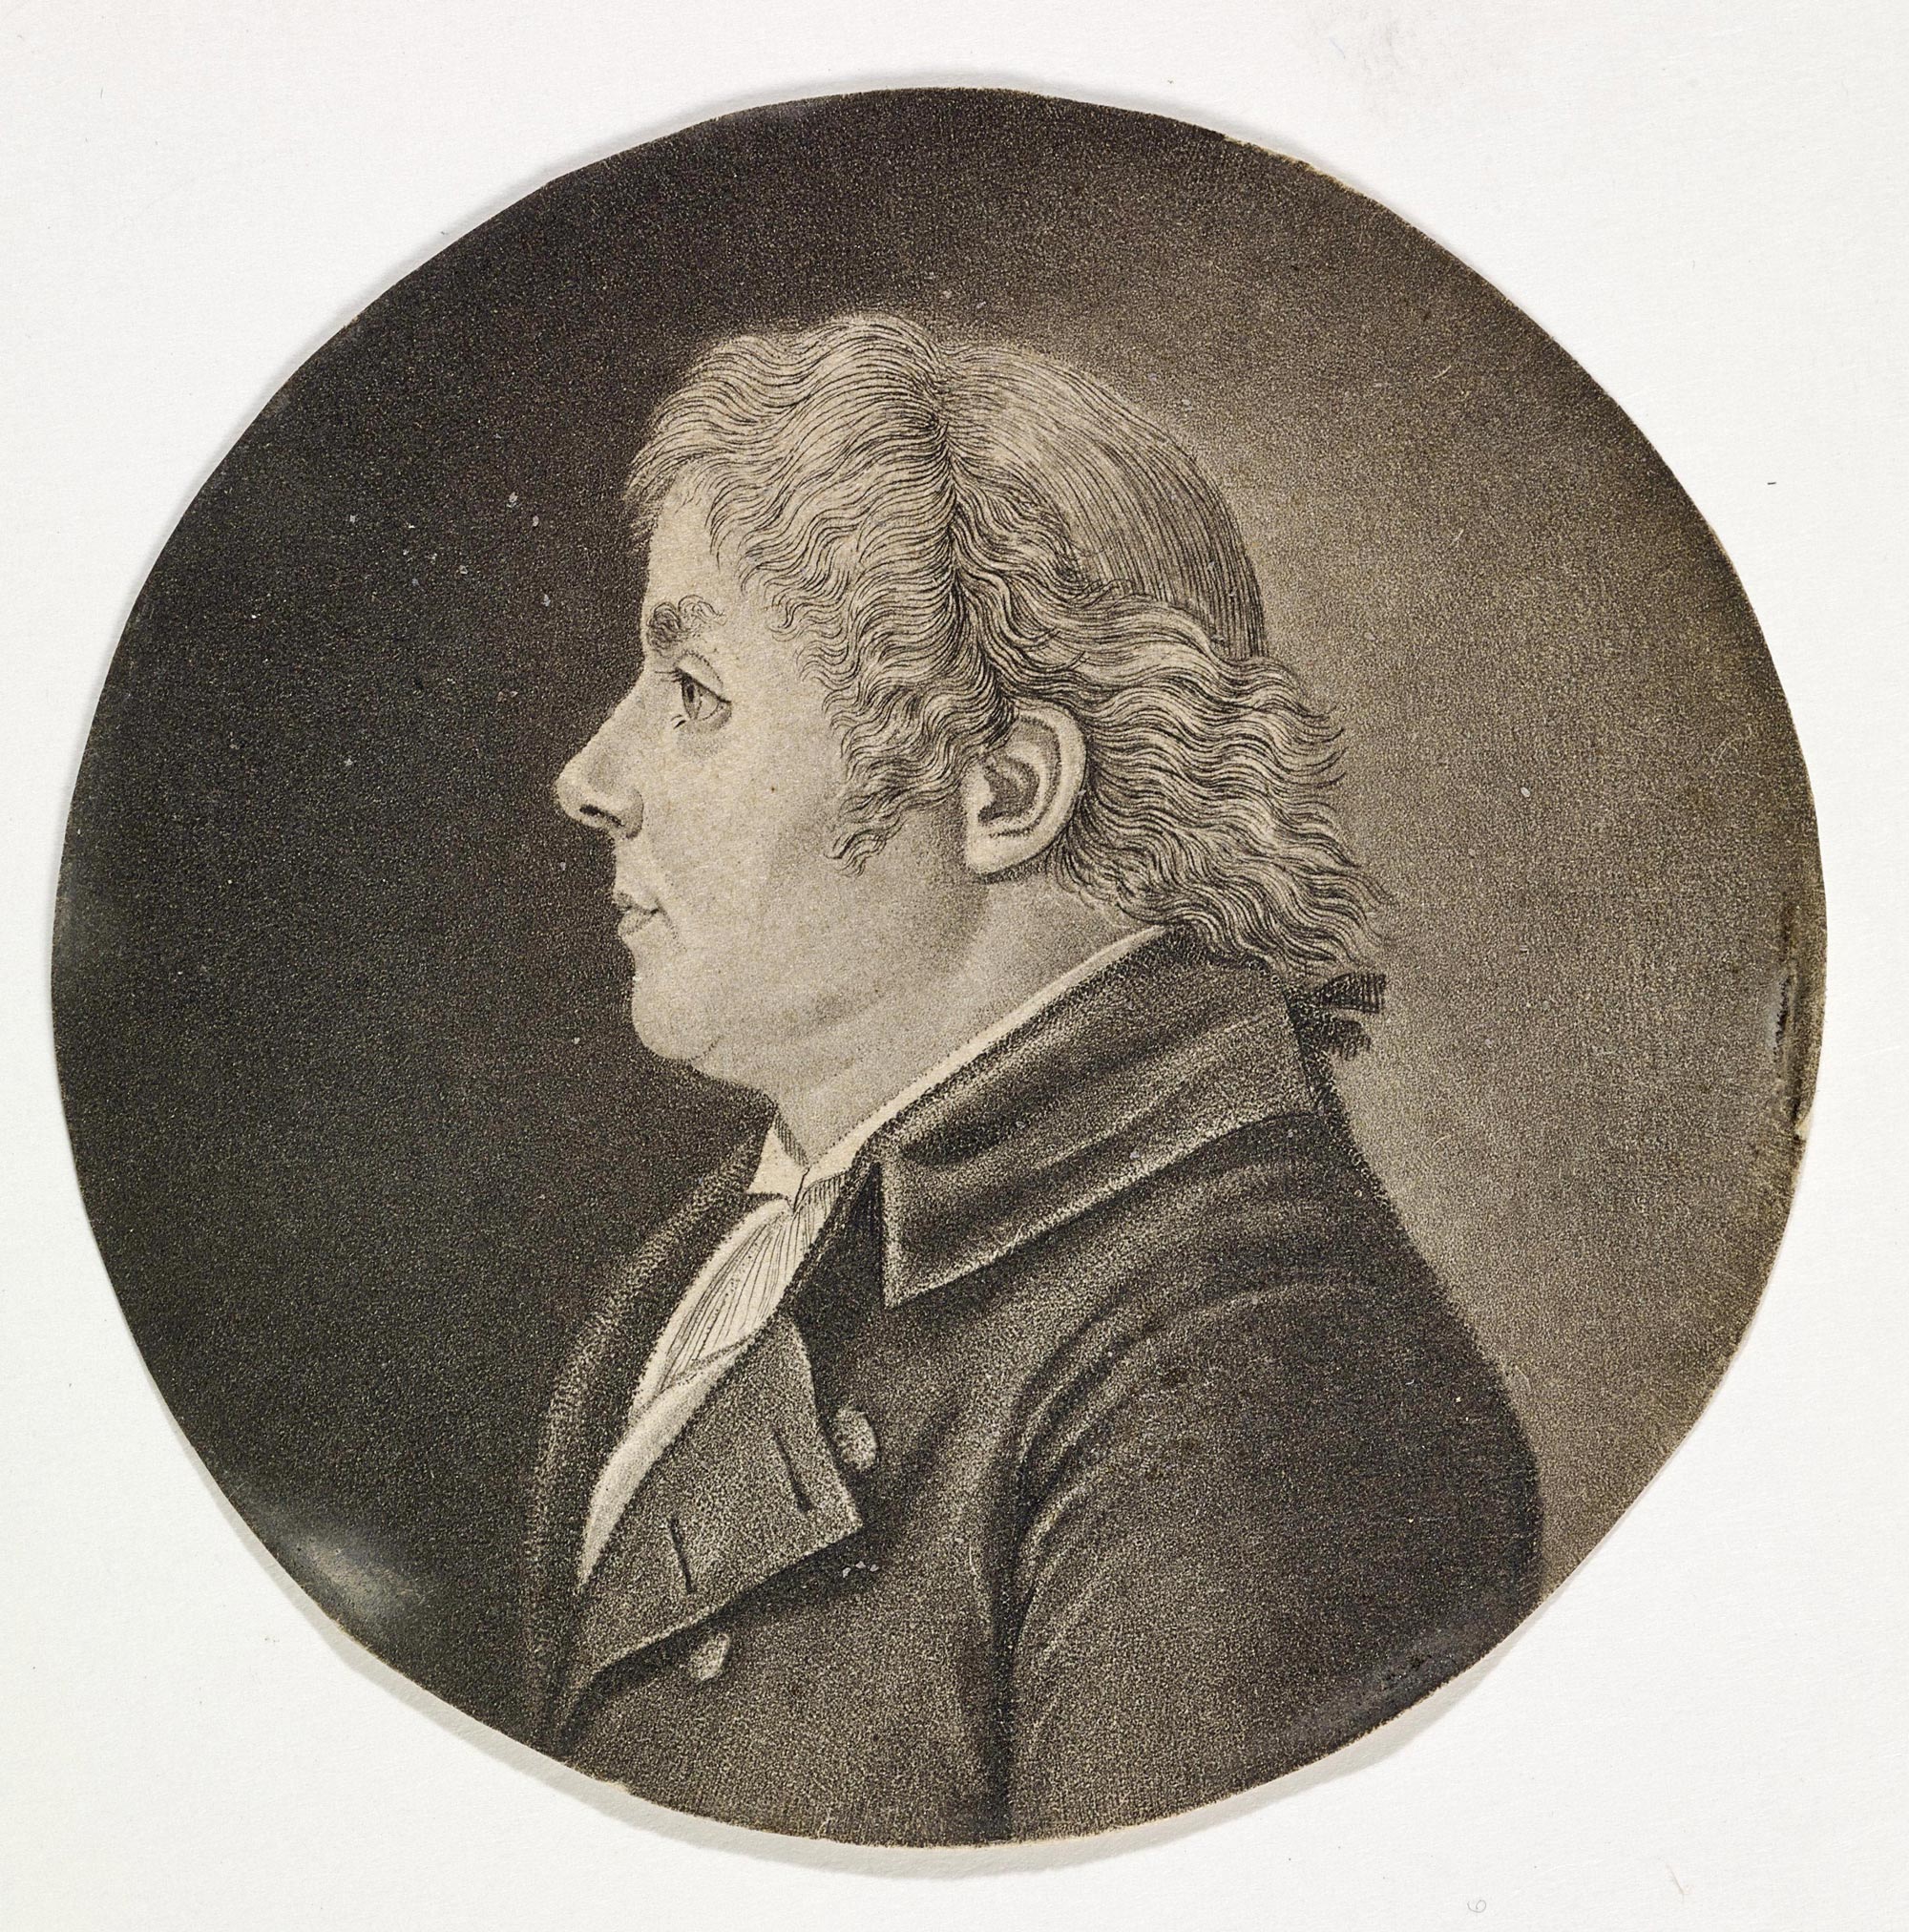 Ecole française, Portrait de Lucien Joseph Raoux, vers 1800, Musée de la Musique, Paris © Claude Germain